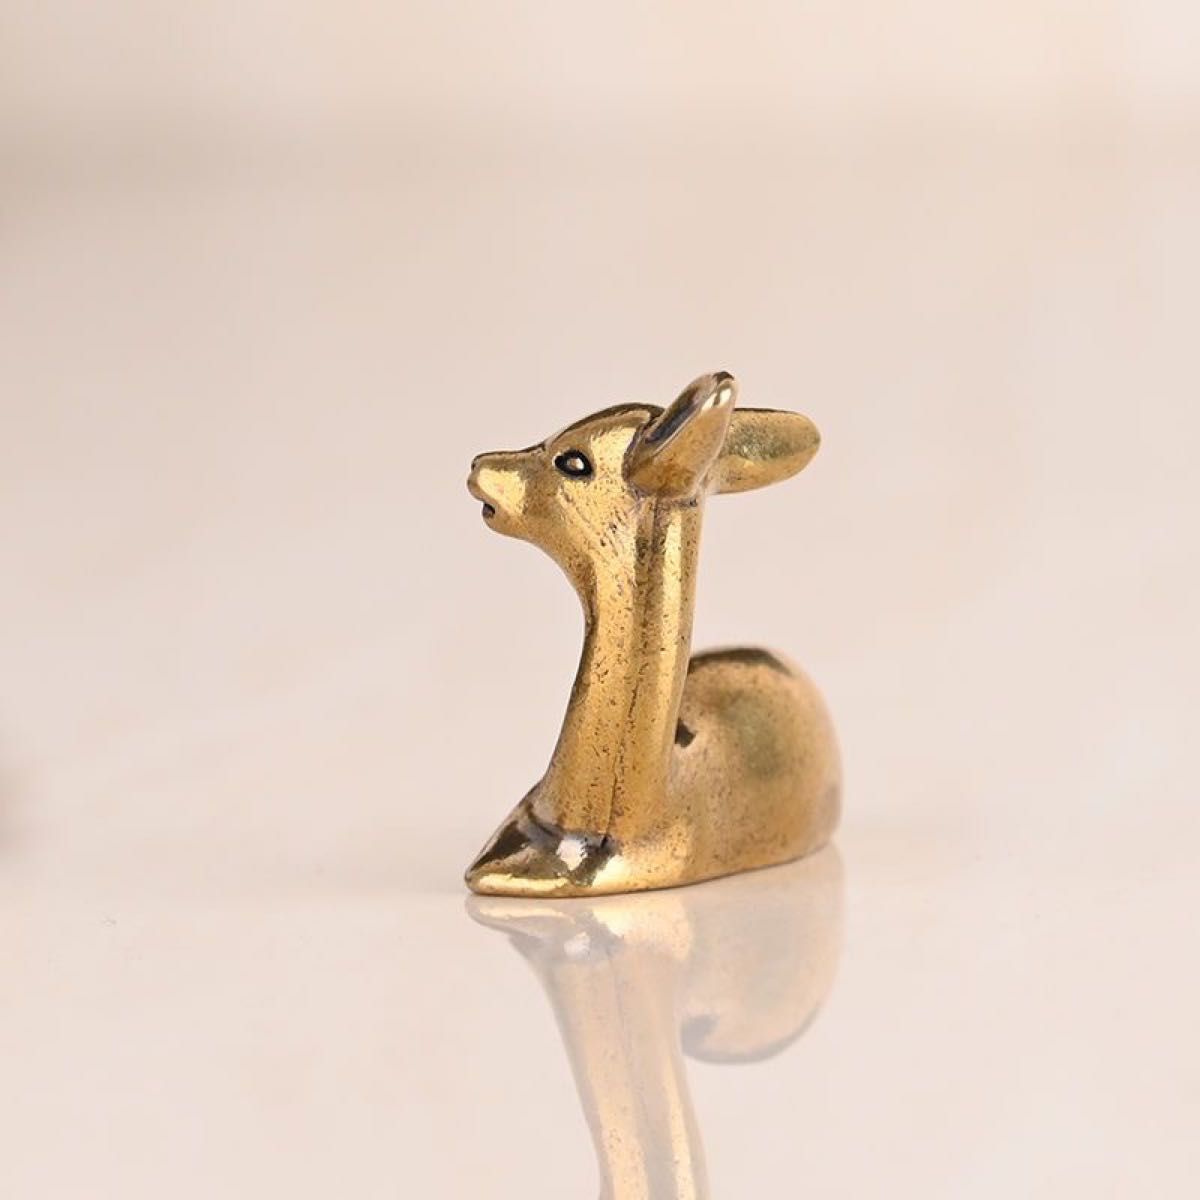 銅製 茶道具 質感 細工実心銅鹿 可愛い 小鹿 美術品 置物 古玩  動物  飾り